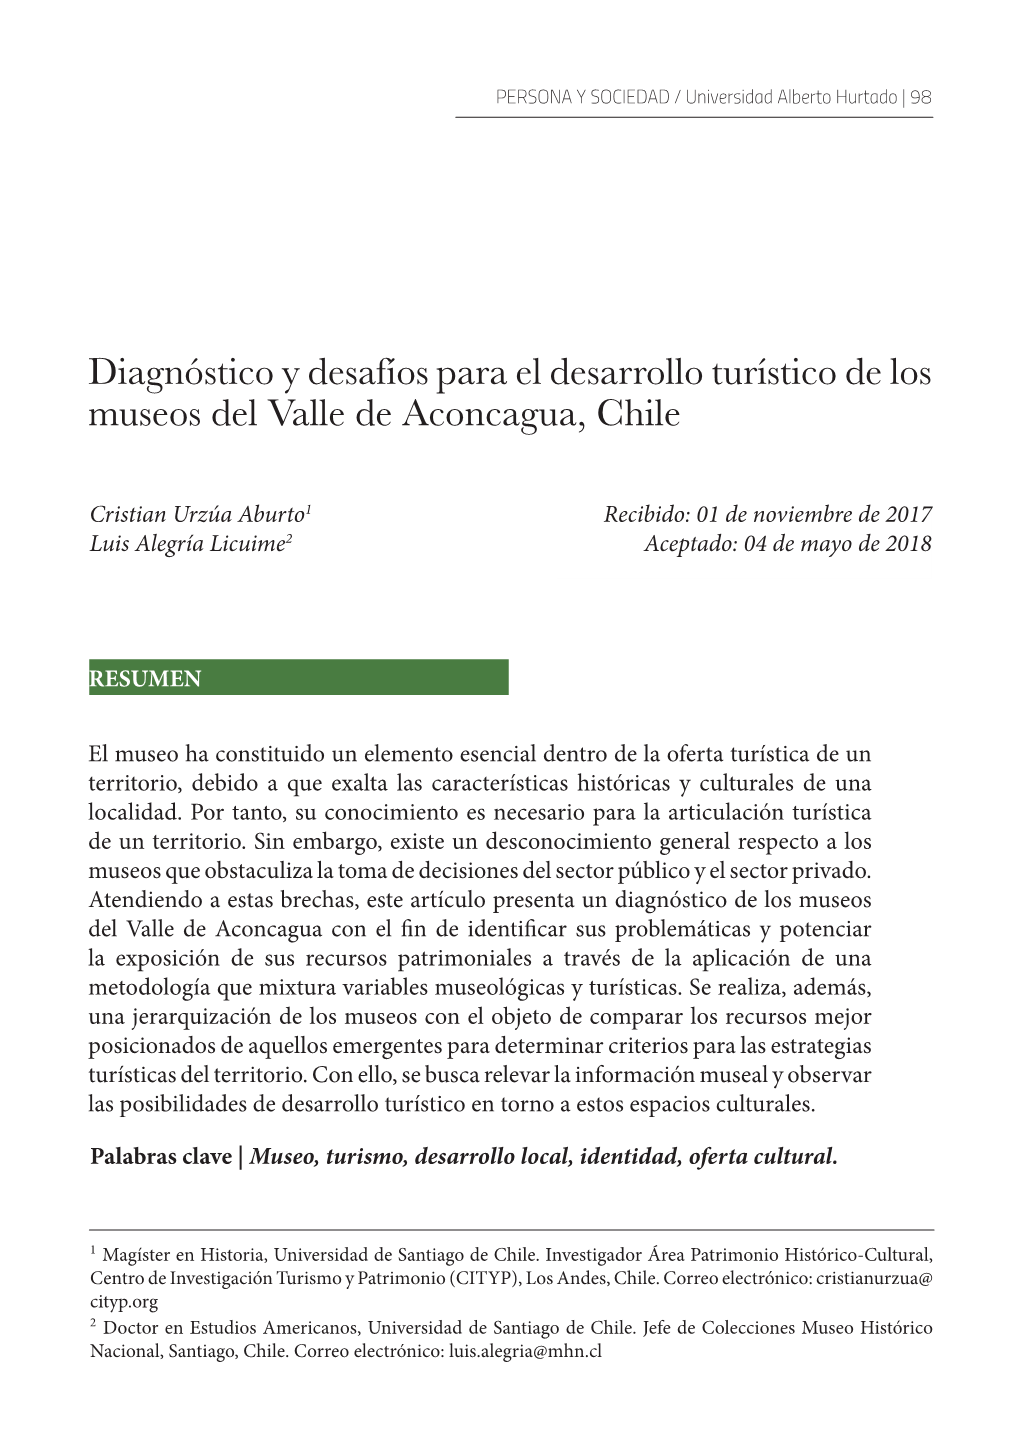 Diagnóstico Y Desafíos Para El Desarrollo Turístico De Los Museos Del Valle De Aconcagua, Chile